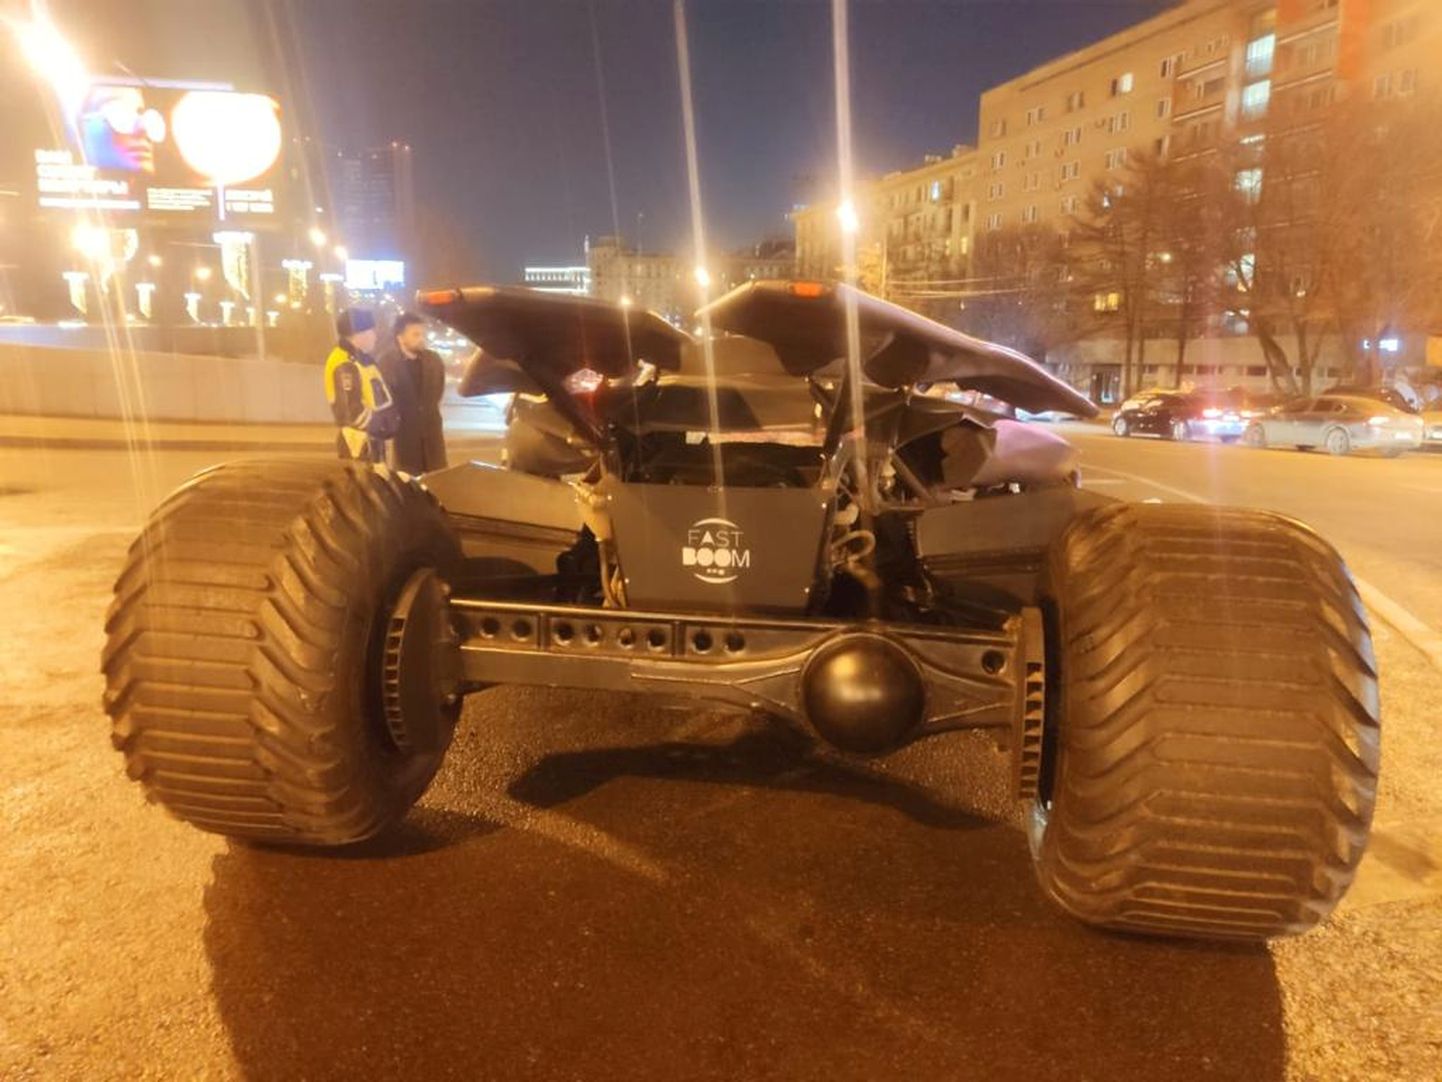 Moskva politsei konfiskeeris Batmobile'i, mis meenutab Batmani masinat 2016. aasta filmist «Batman v Superman: Dawn of Justice»